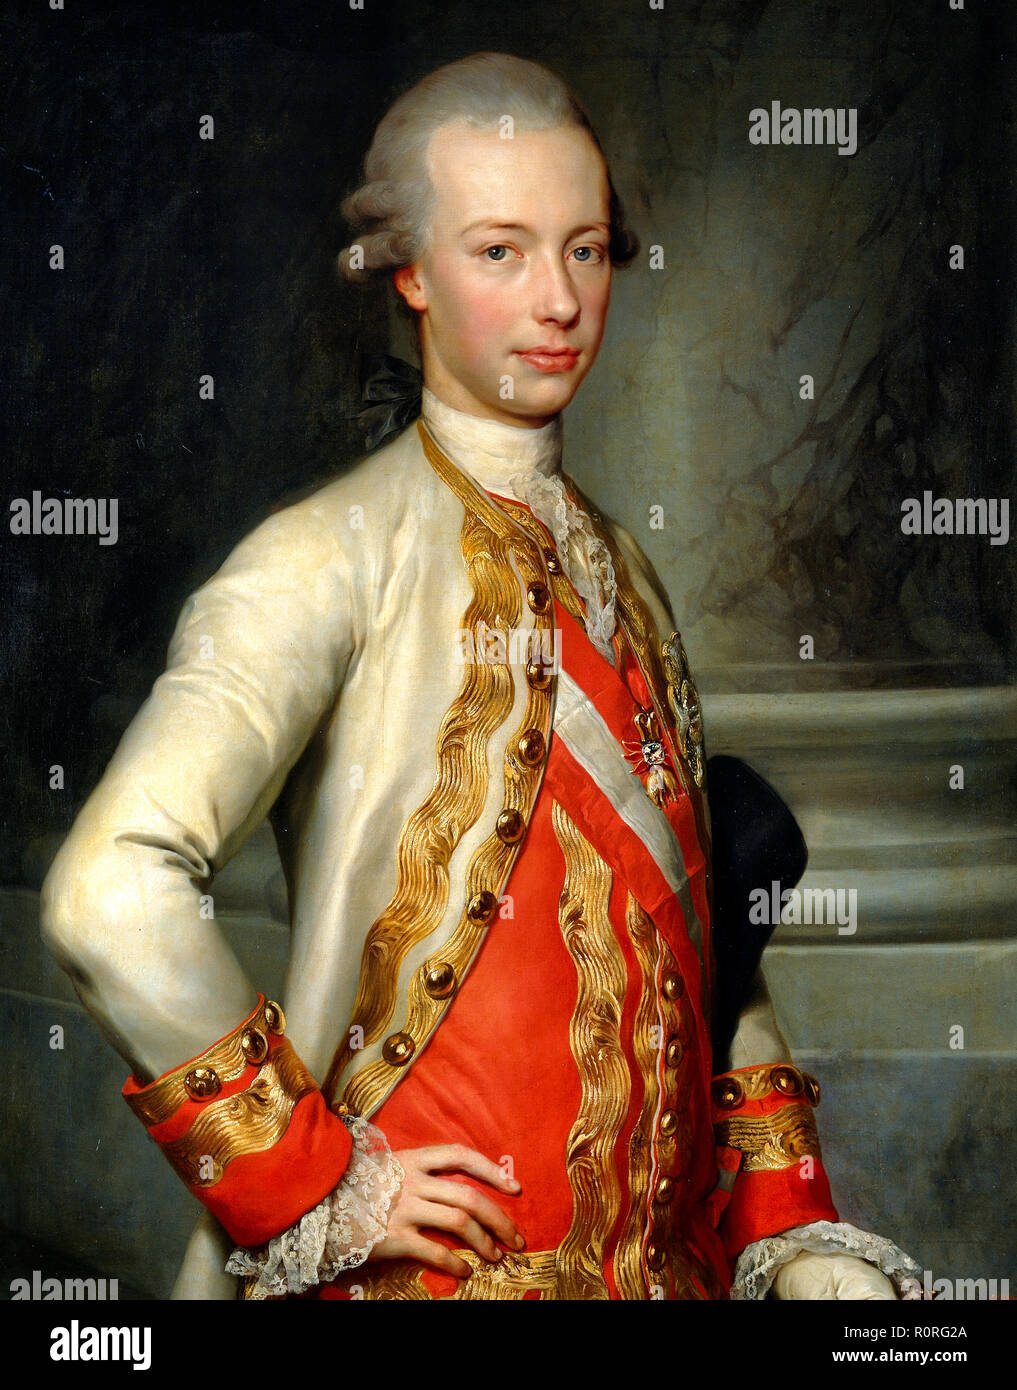 Portrait de l'Archiduc Léopold de Lorraine (1747-1792), qui devint Grand-duc de Toscane et plus tard empereur du Saint Empire Romain. Pompeo Batoni, vers 1769 Banque D'Images